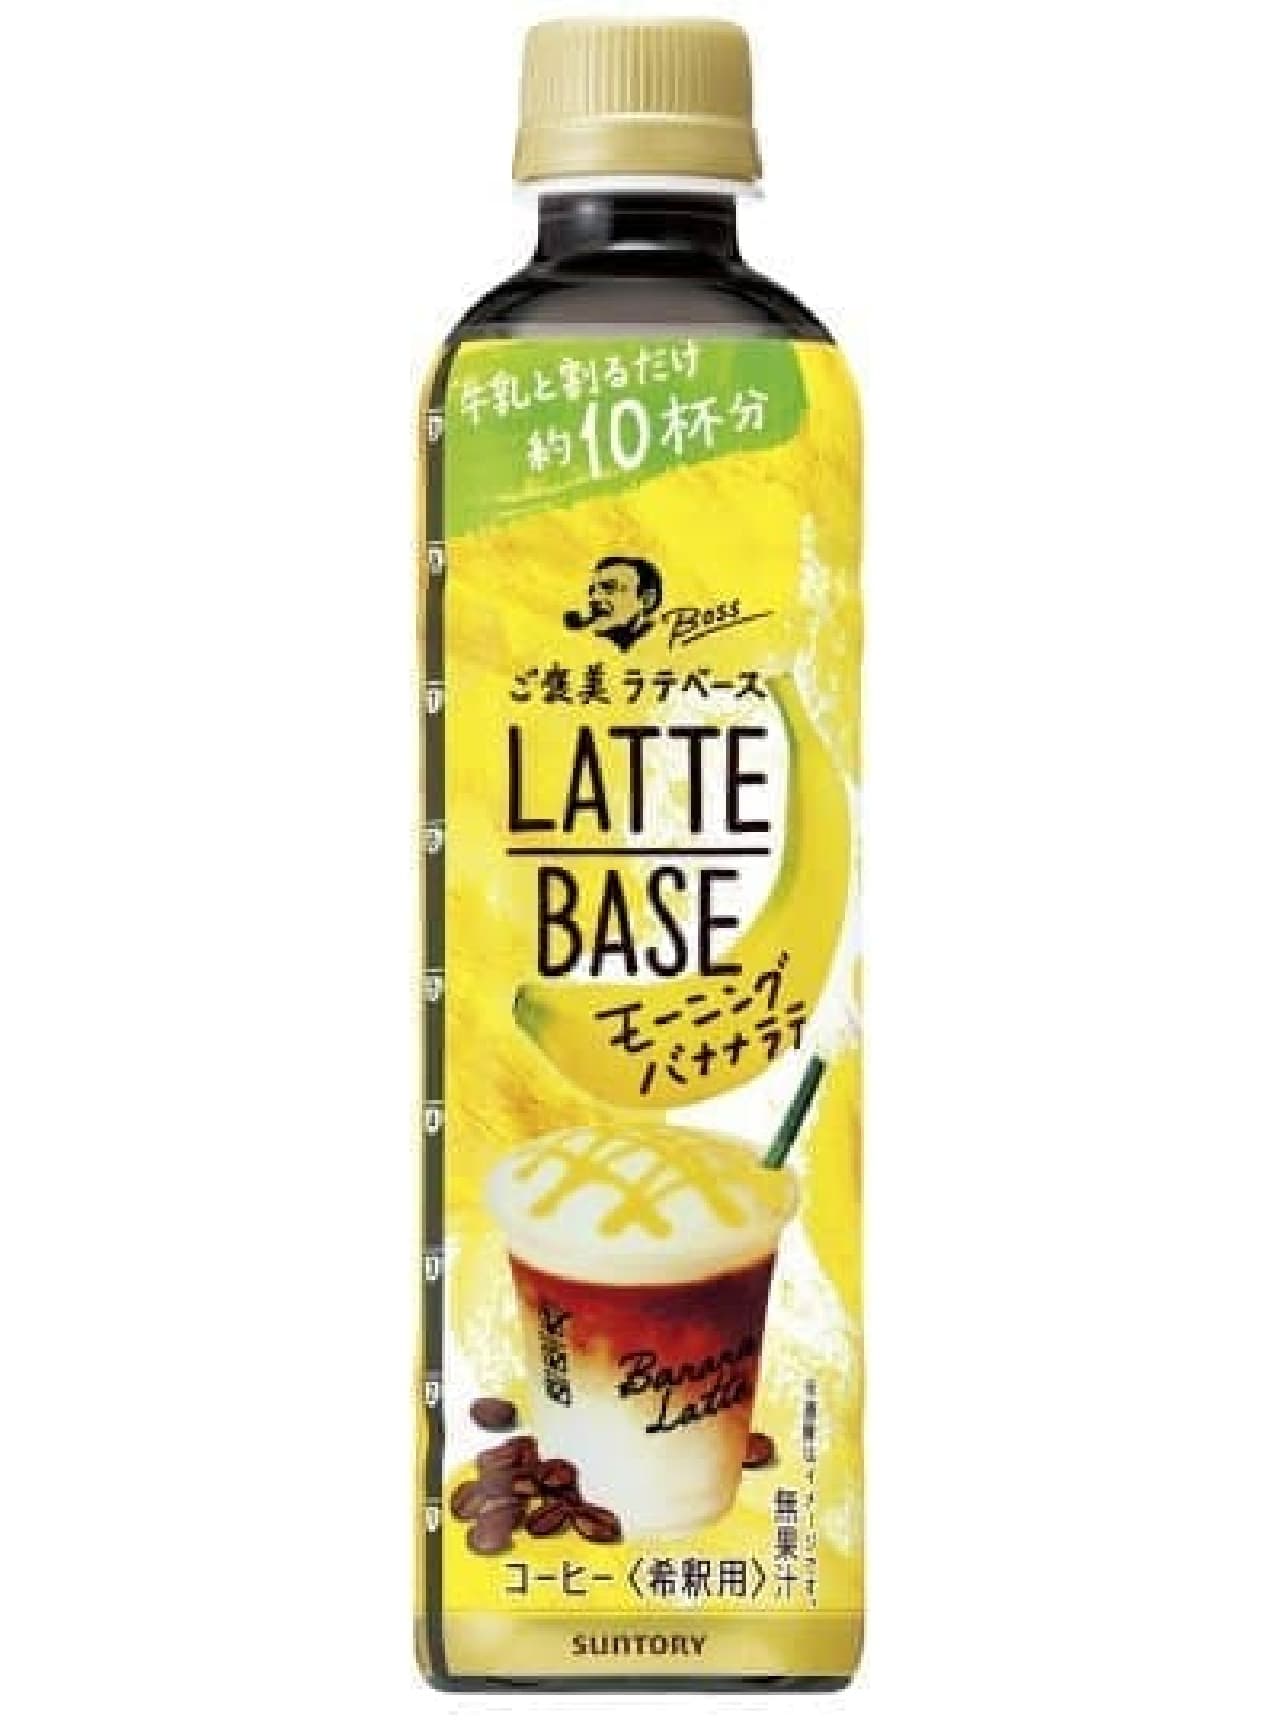 Suntory "Boss Latte Base Morning Banana Latte"